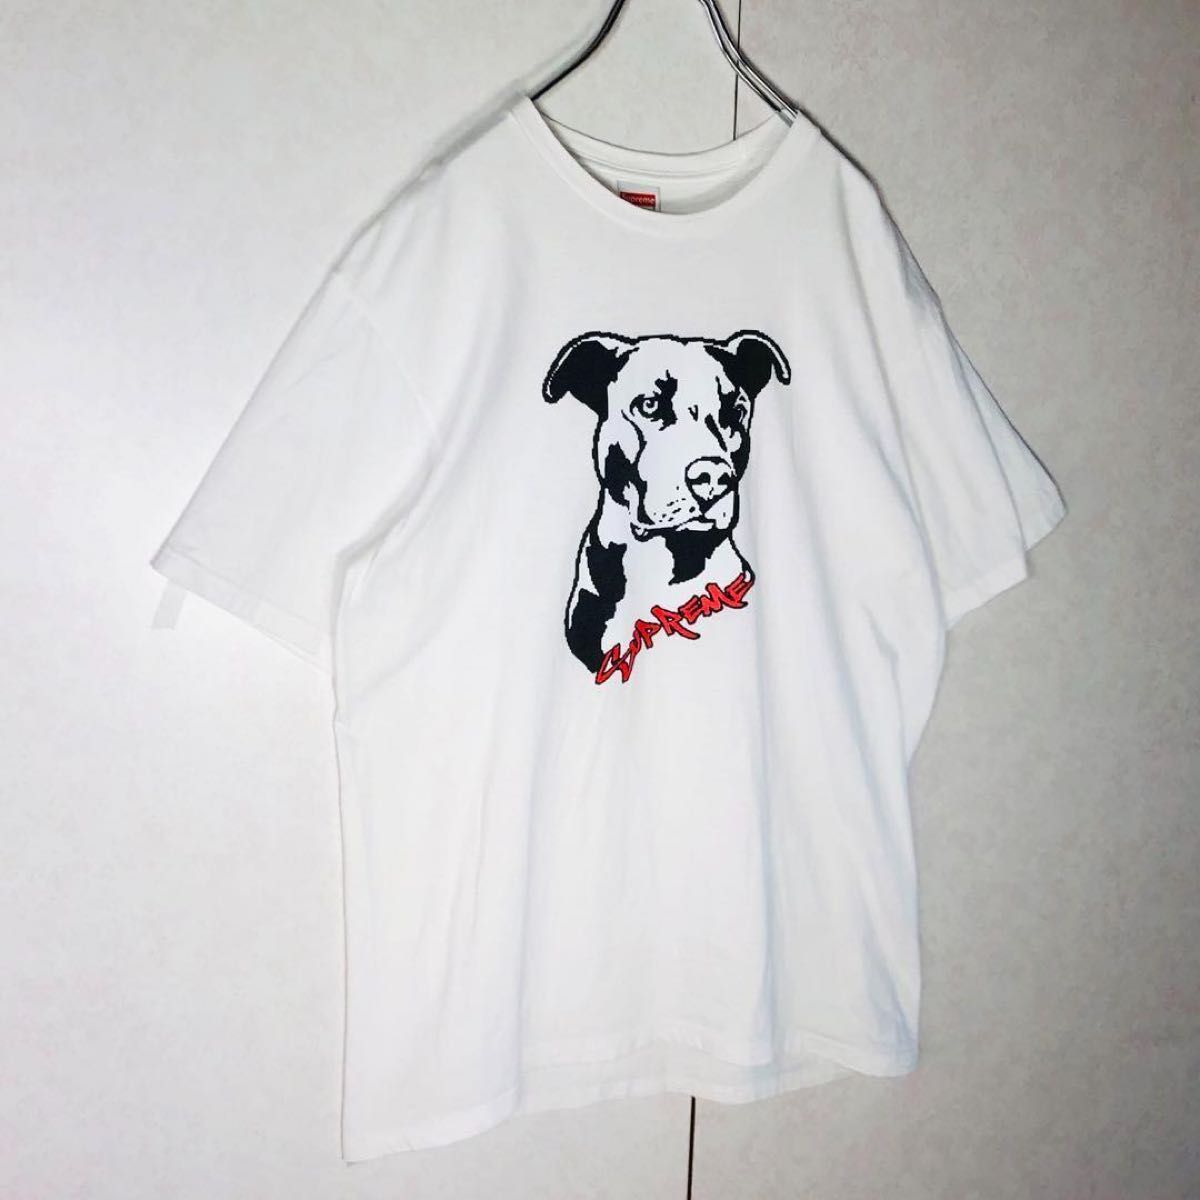 【入手困難】シュプリーム ビッグロゴ 定番カラー 人気デザインTシャツ Mサイズ